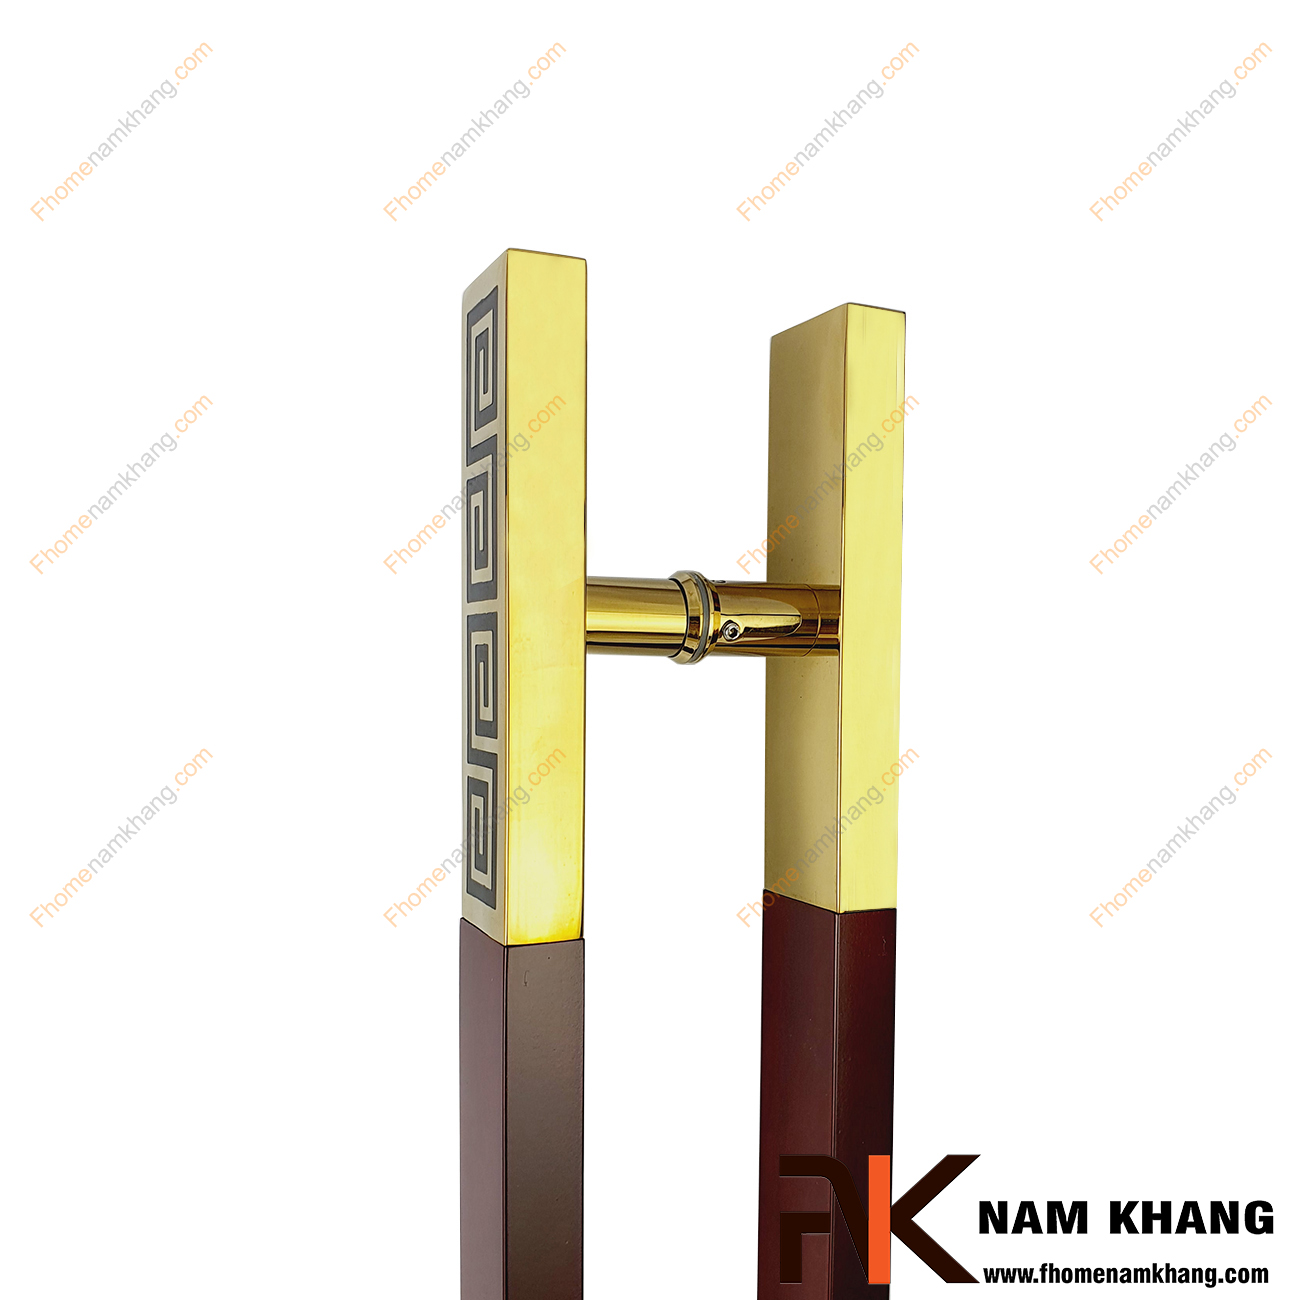 Tay nắm cửa cabin màu inox vàng bóng phối gỗ đỏ NKC005-VGD là sản phẩm tay nắm đồng tâm dùng cho nhiều loại cửa với đầy đủ các chất liệu theo thiết kế nội thất.